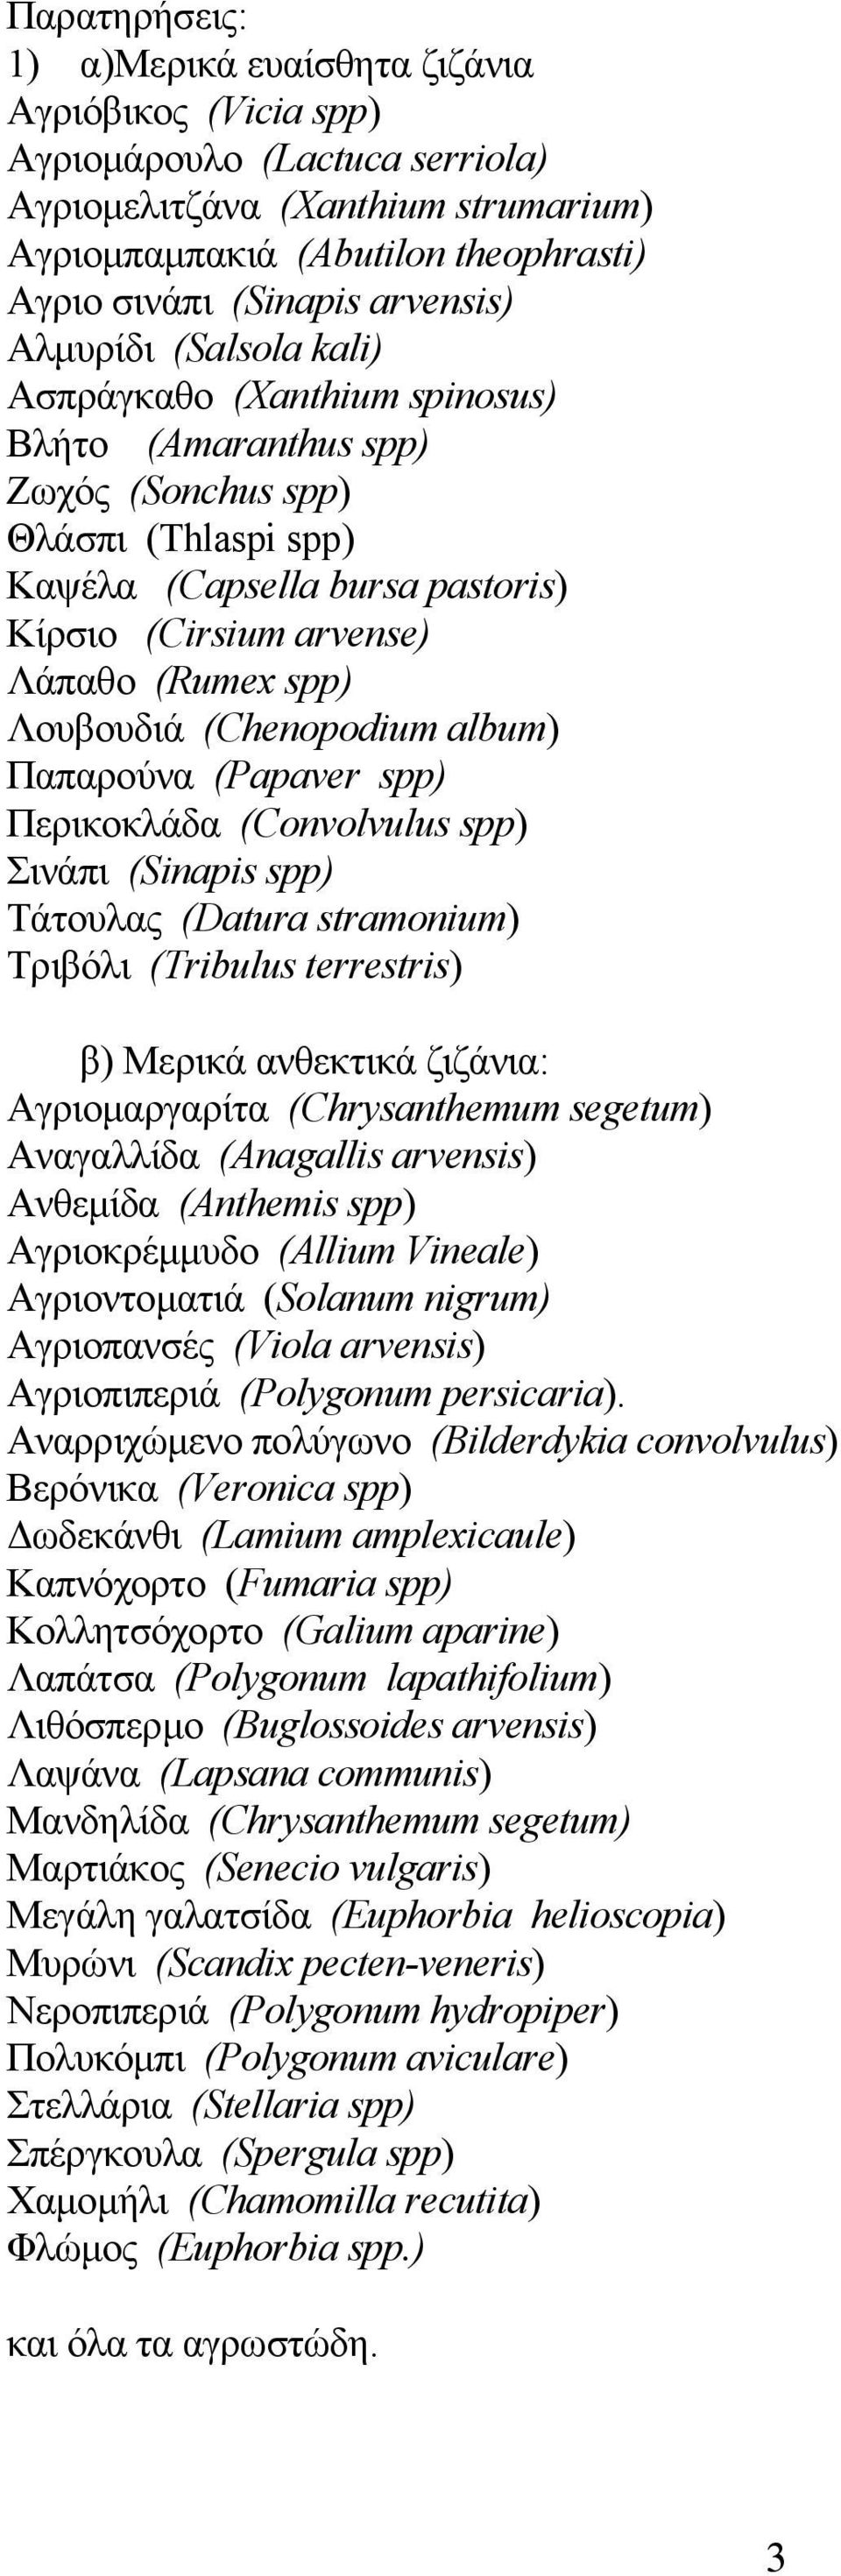 (Rumex spp) Λουβουδιά (Chenopodium album) Παπαρούνα (Papaver spp) Περικοκλάδα (Convolvulus spp) Σινάπι (Sinapis spp) Τάτουλας (Datura stramonium) Τριβόλι (Tribulus terrestris) β) Μερικά ανθεκτικά